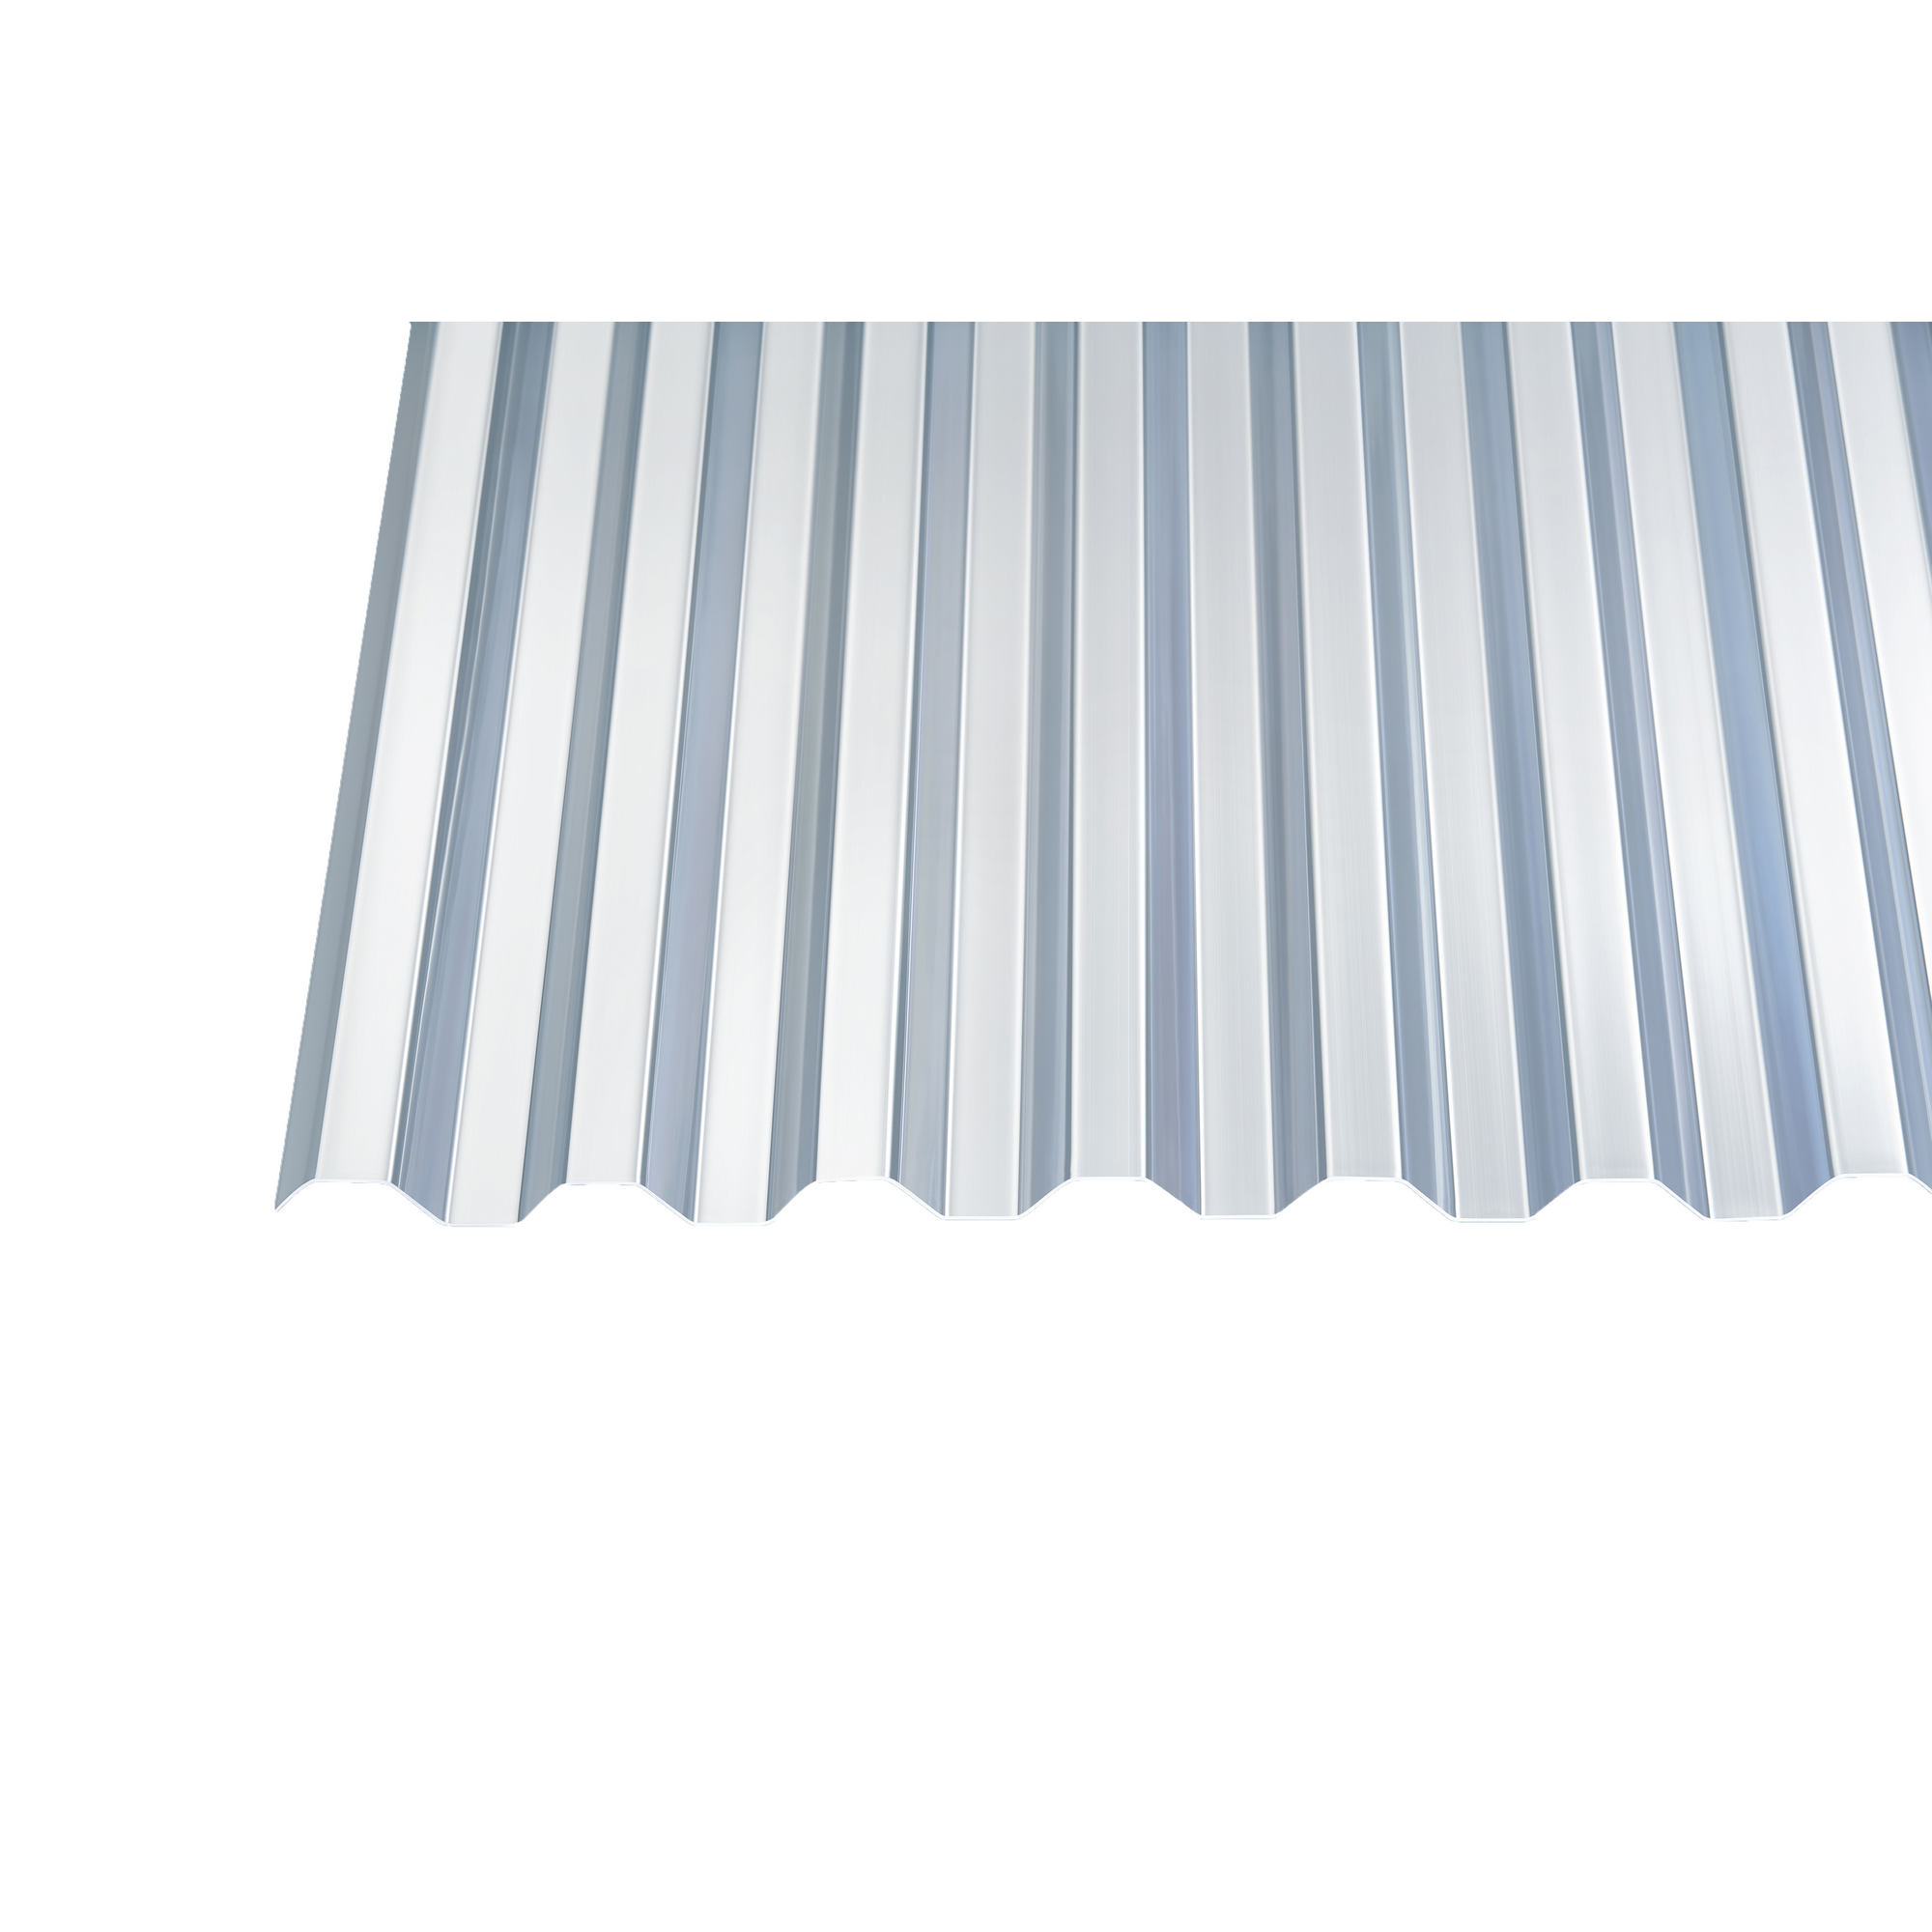 Firstprofil PVC farblos-Trapez 70/18 in 1106 mm l zweiteilig l für Trapezplatten